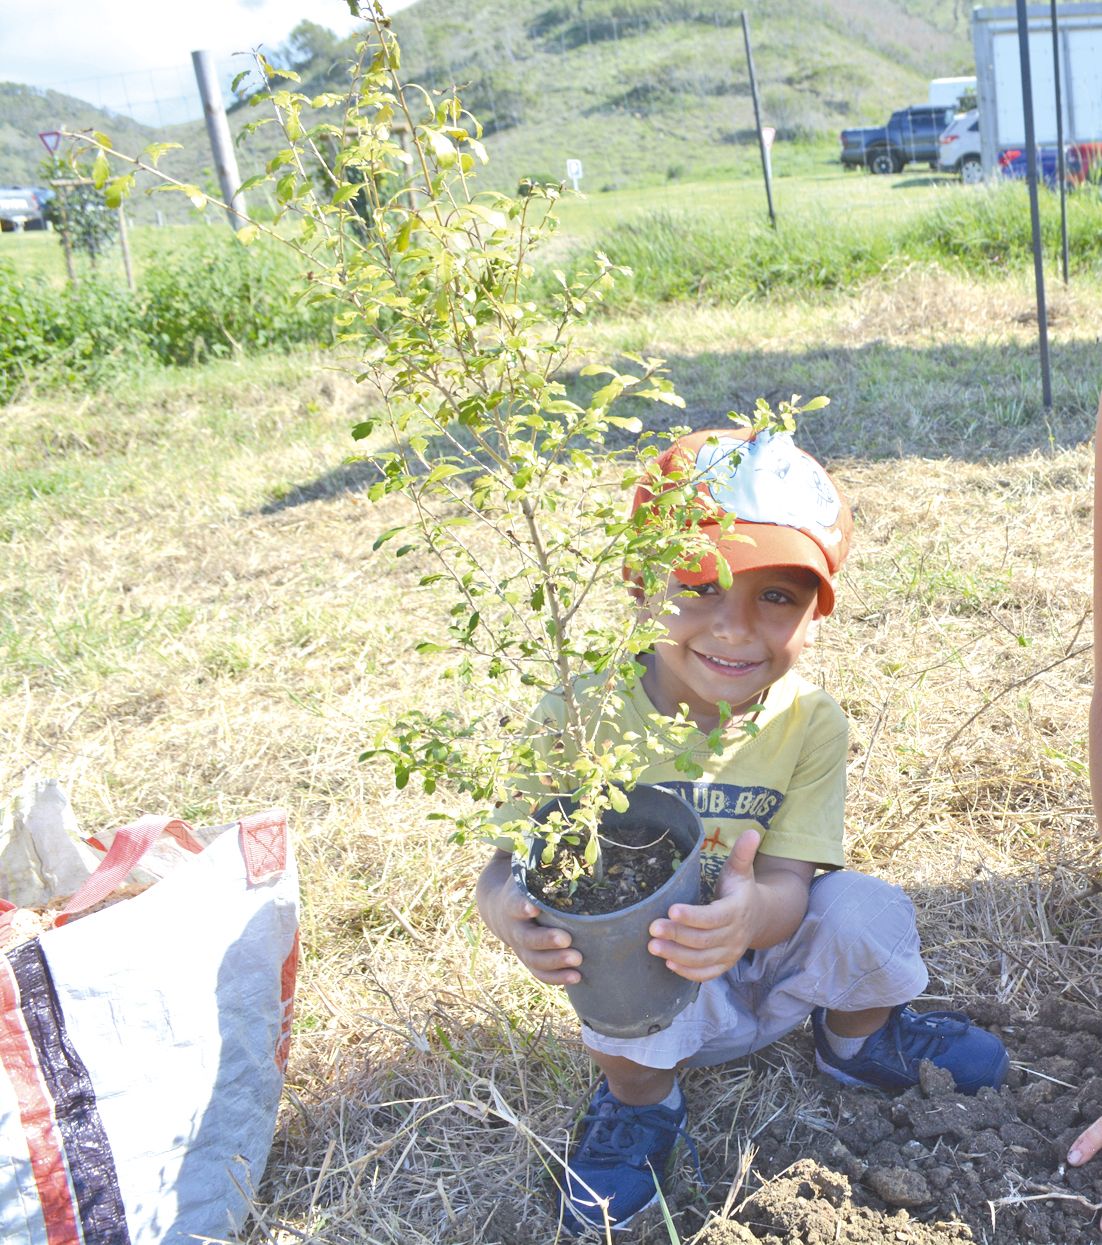 Beaucoup d’enfants ont été associés à cette plantation d’arbres participative et citoyenne réalisée sur un hectare de savane dégradée sur le sentier des Géants et plus précisément sur le champ Barbier. Tout comme leurs parents, ils ont été heureux d’appor